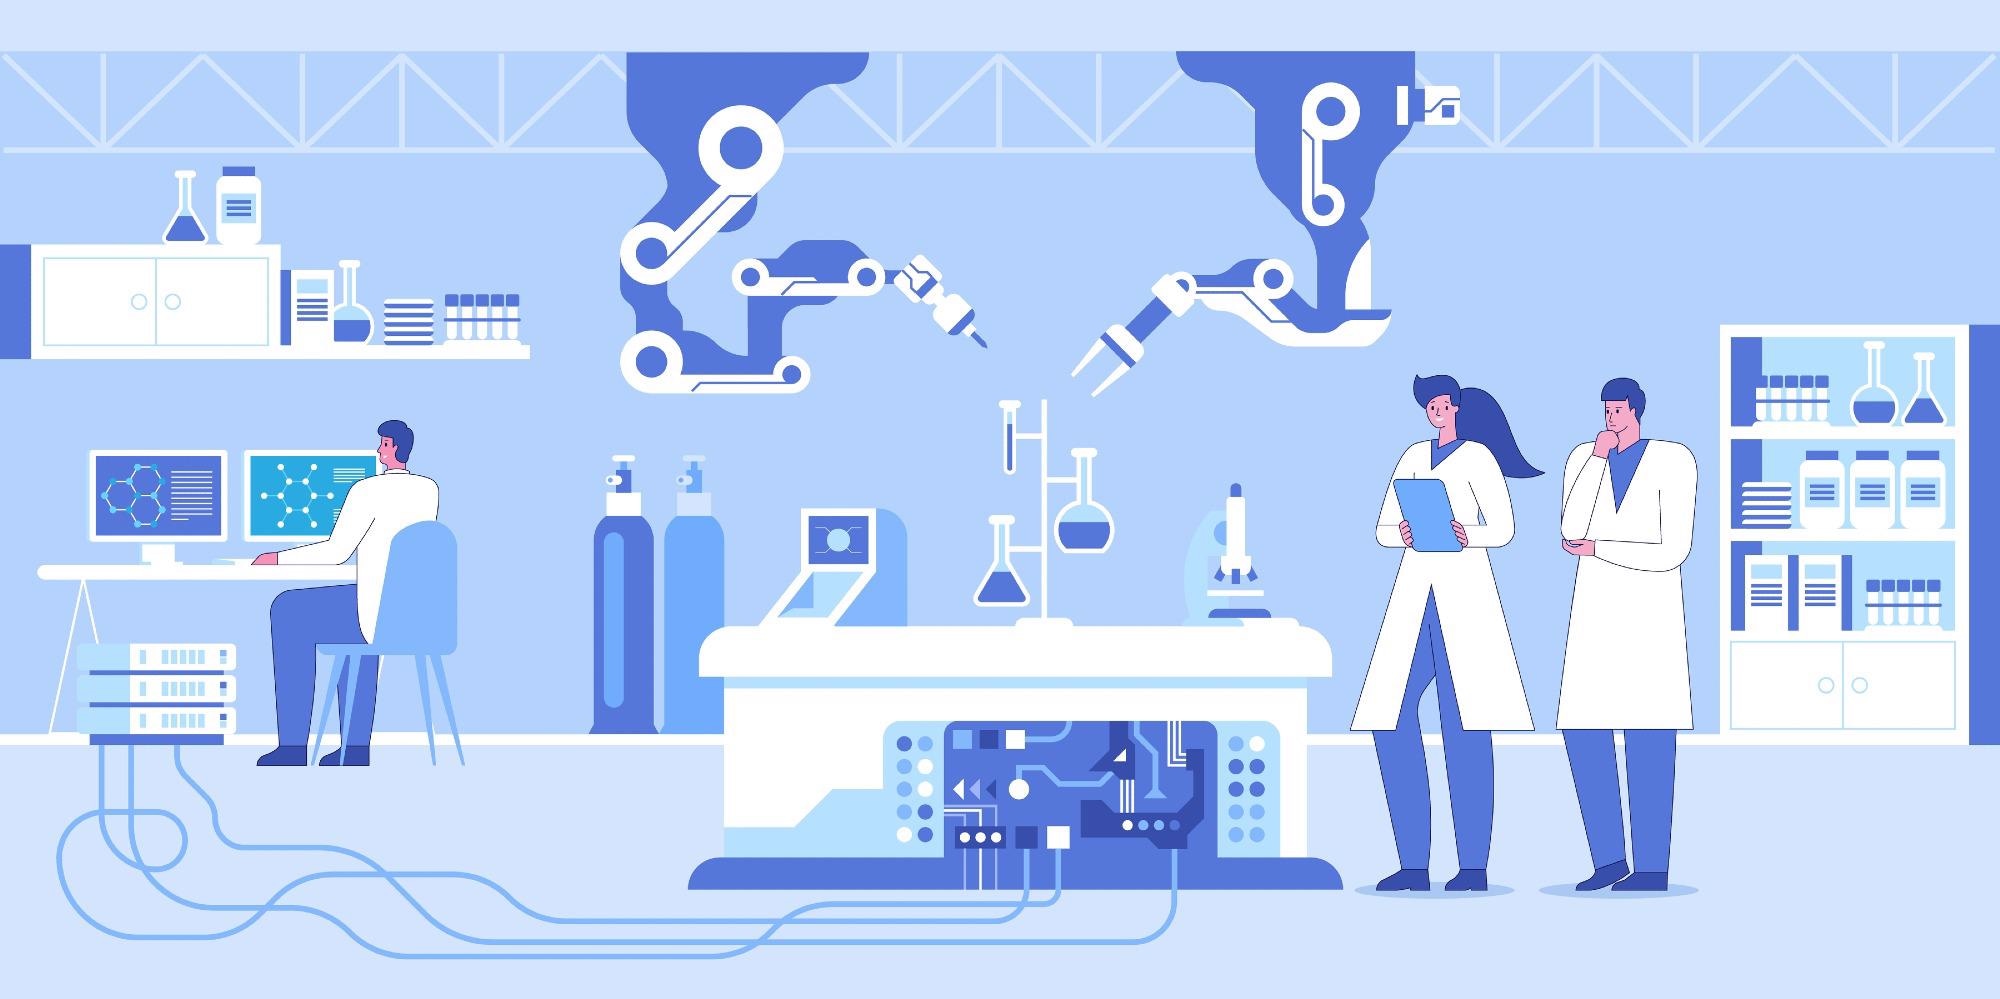 Laboratory Automation